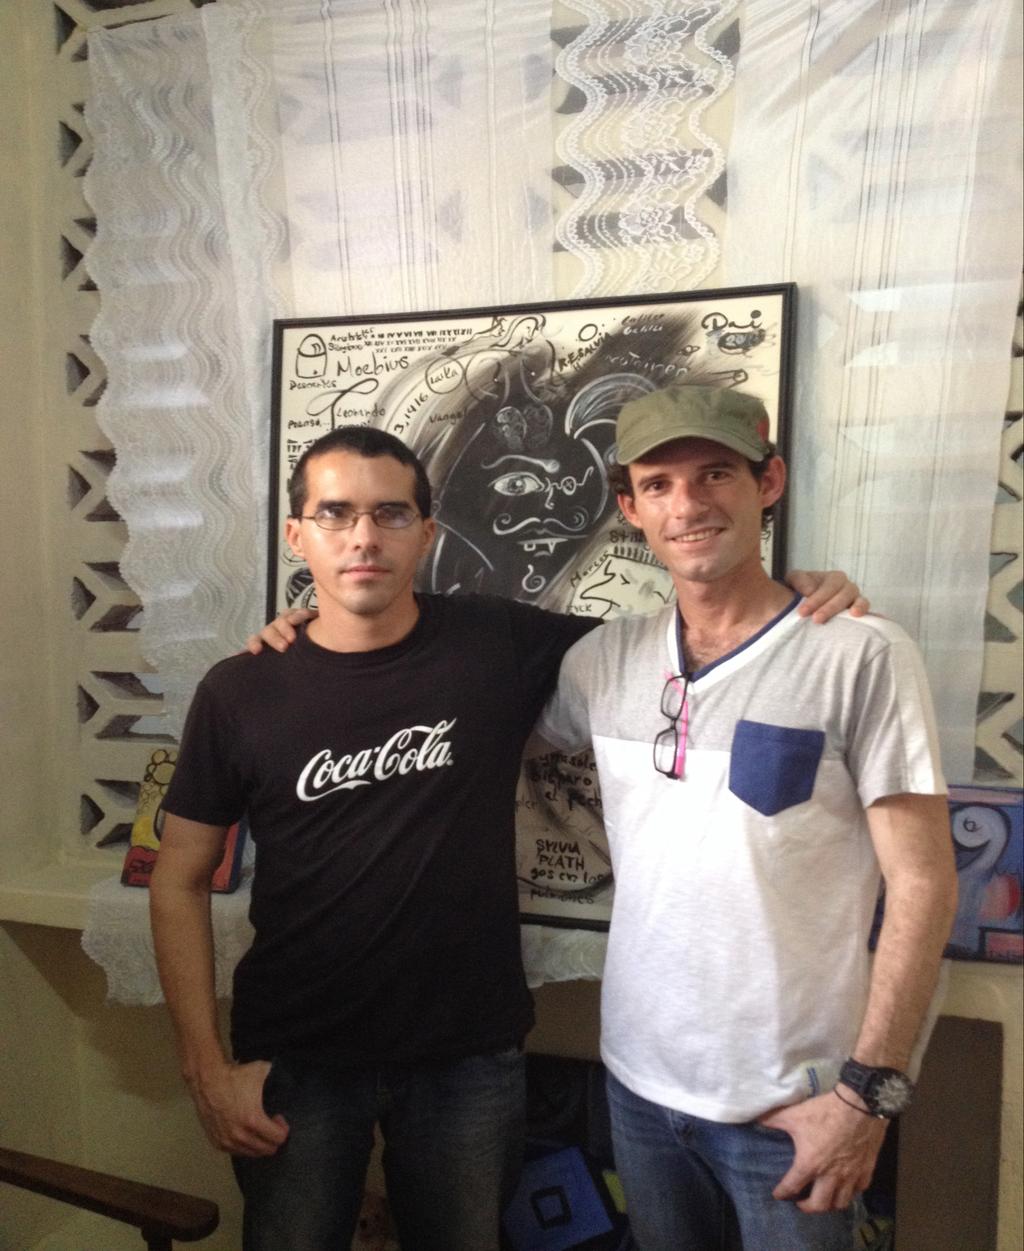 CUBAN CULTURAL VENTURES Vinden van minstens één nieuwe Cubaanse kunstenaar In 2015 heeft CCV contacten gelegd met twee nieuwe Cubaanse kunstenaars: Josué Pavel Herrera (Havana) en Danni Mulet Pavón